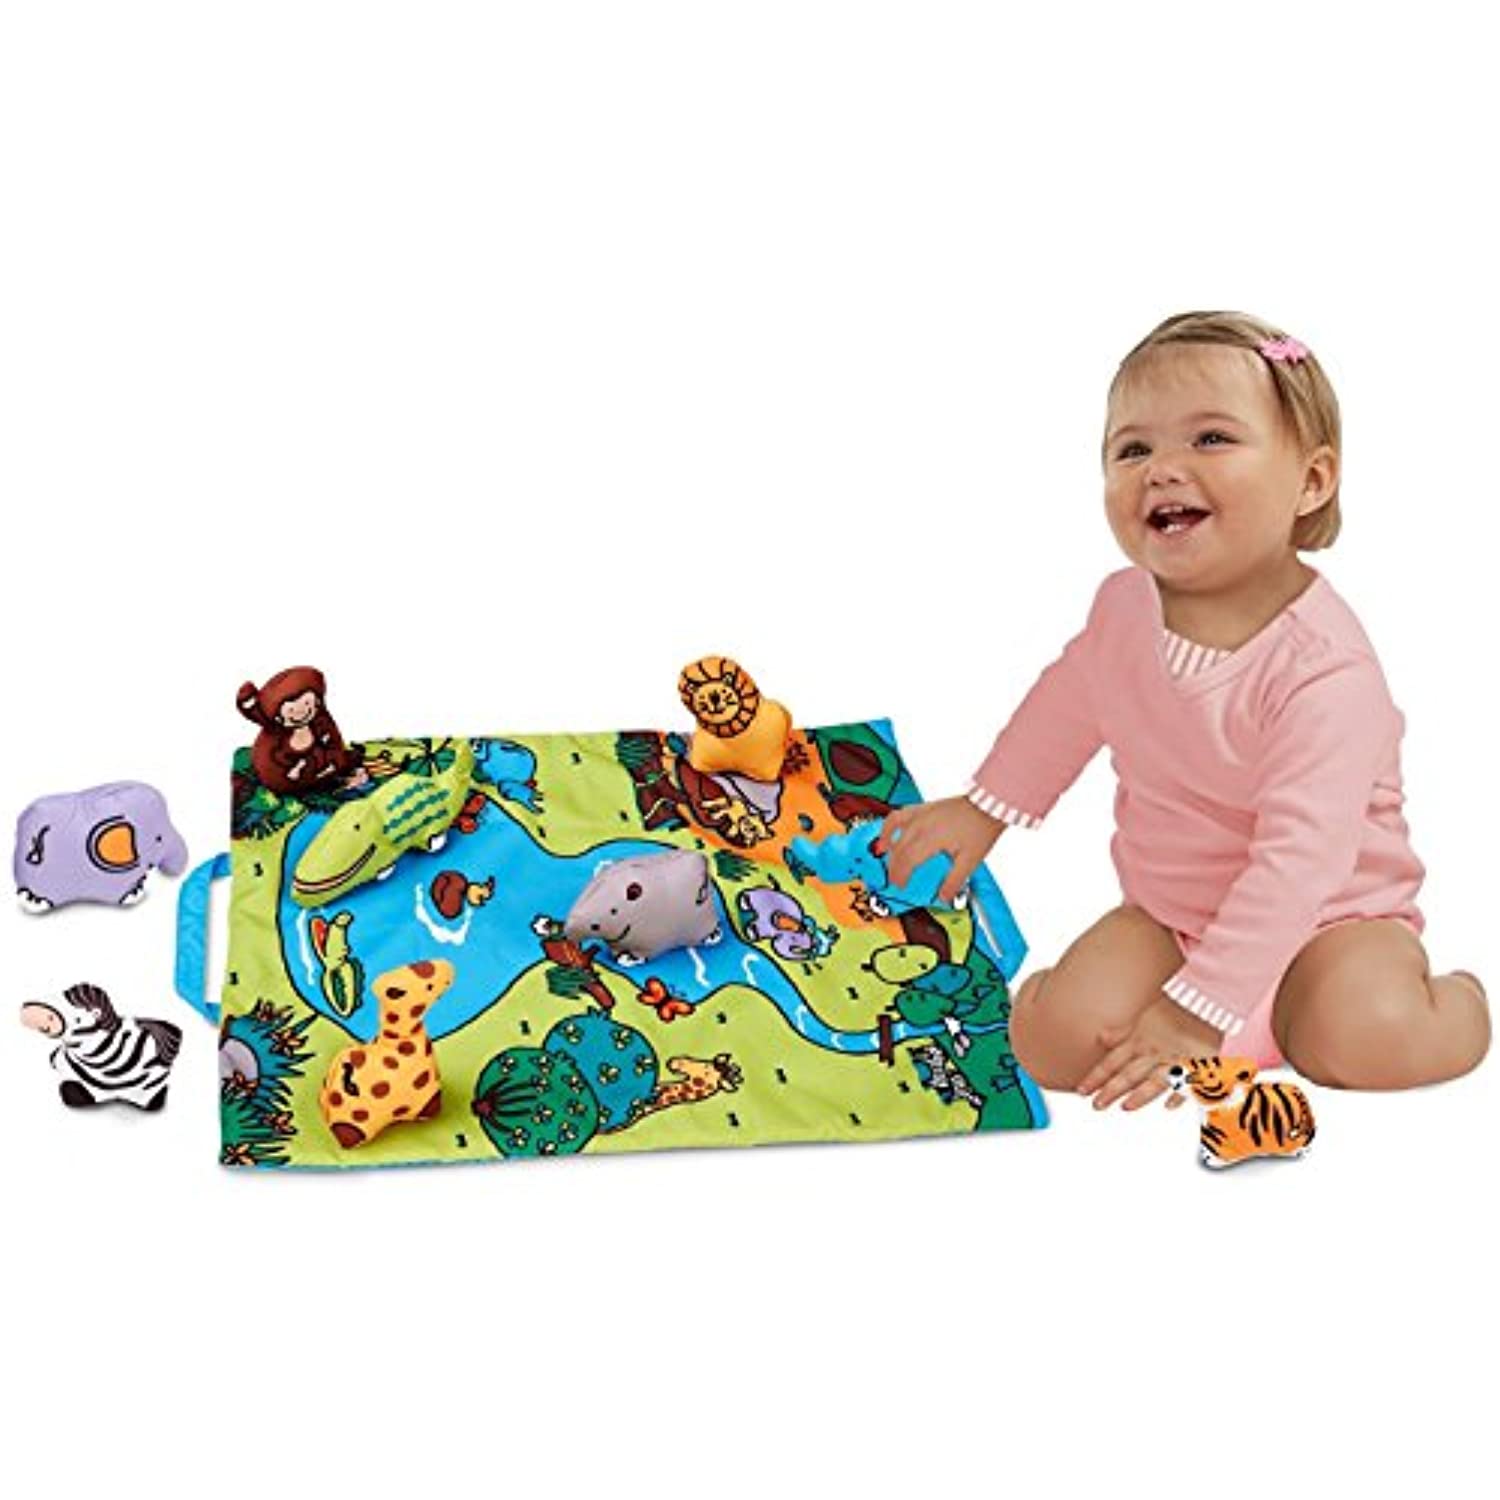 Melissa & Doug Take-Along Wild Safari Play Mat: K's Kids Baby Toy Series + 1 Free Pair of Baby Socks Bundle (92159)